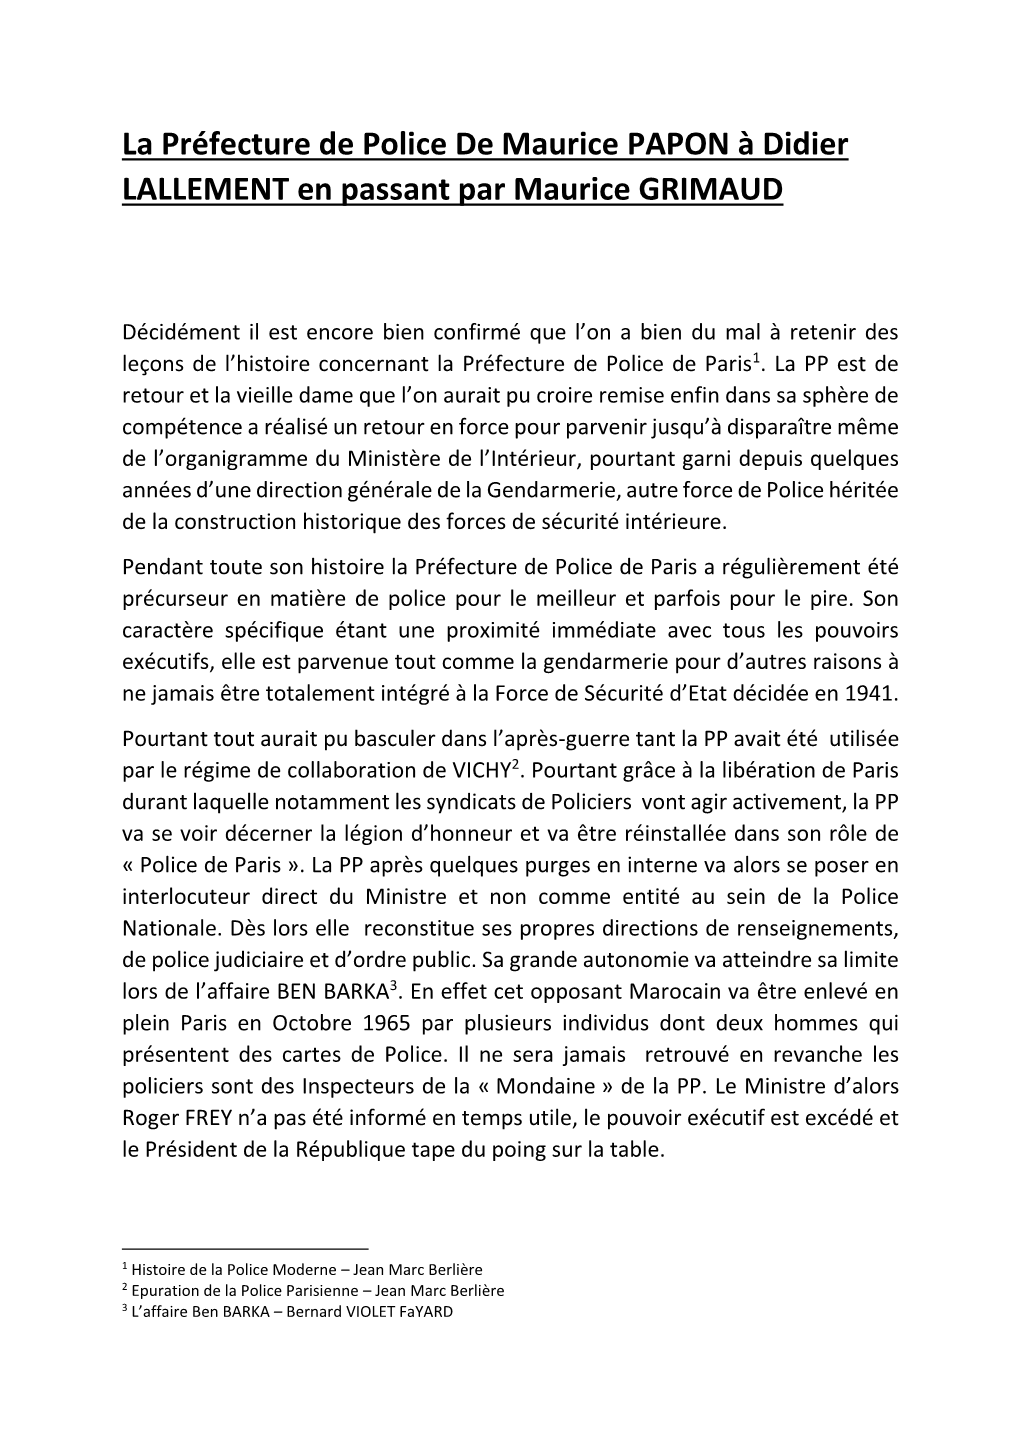 La Préfecture De Police De Maurice PAPON À Didier LALLEMENT En Passant Par Maurice GRIMAUD